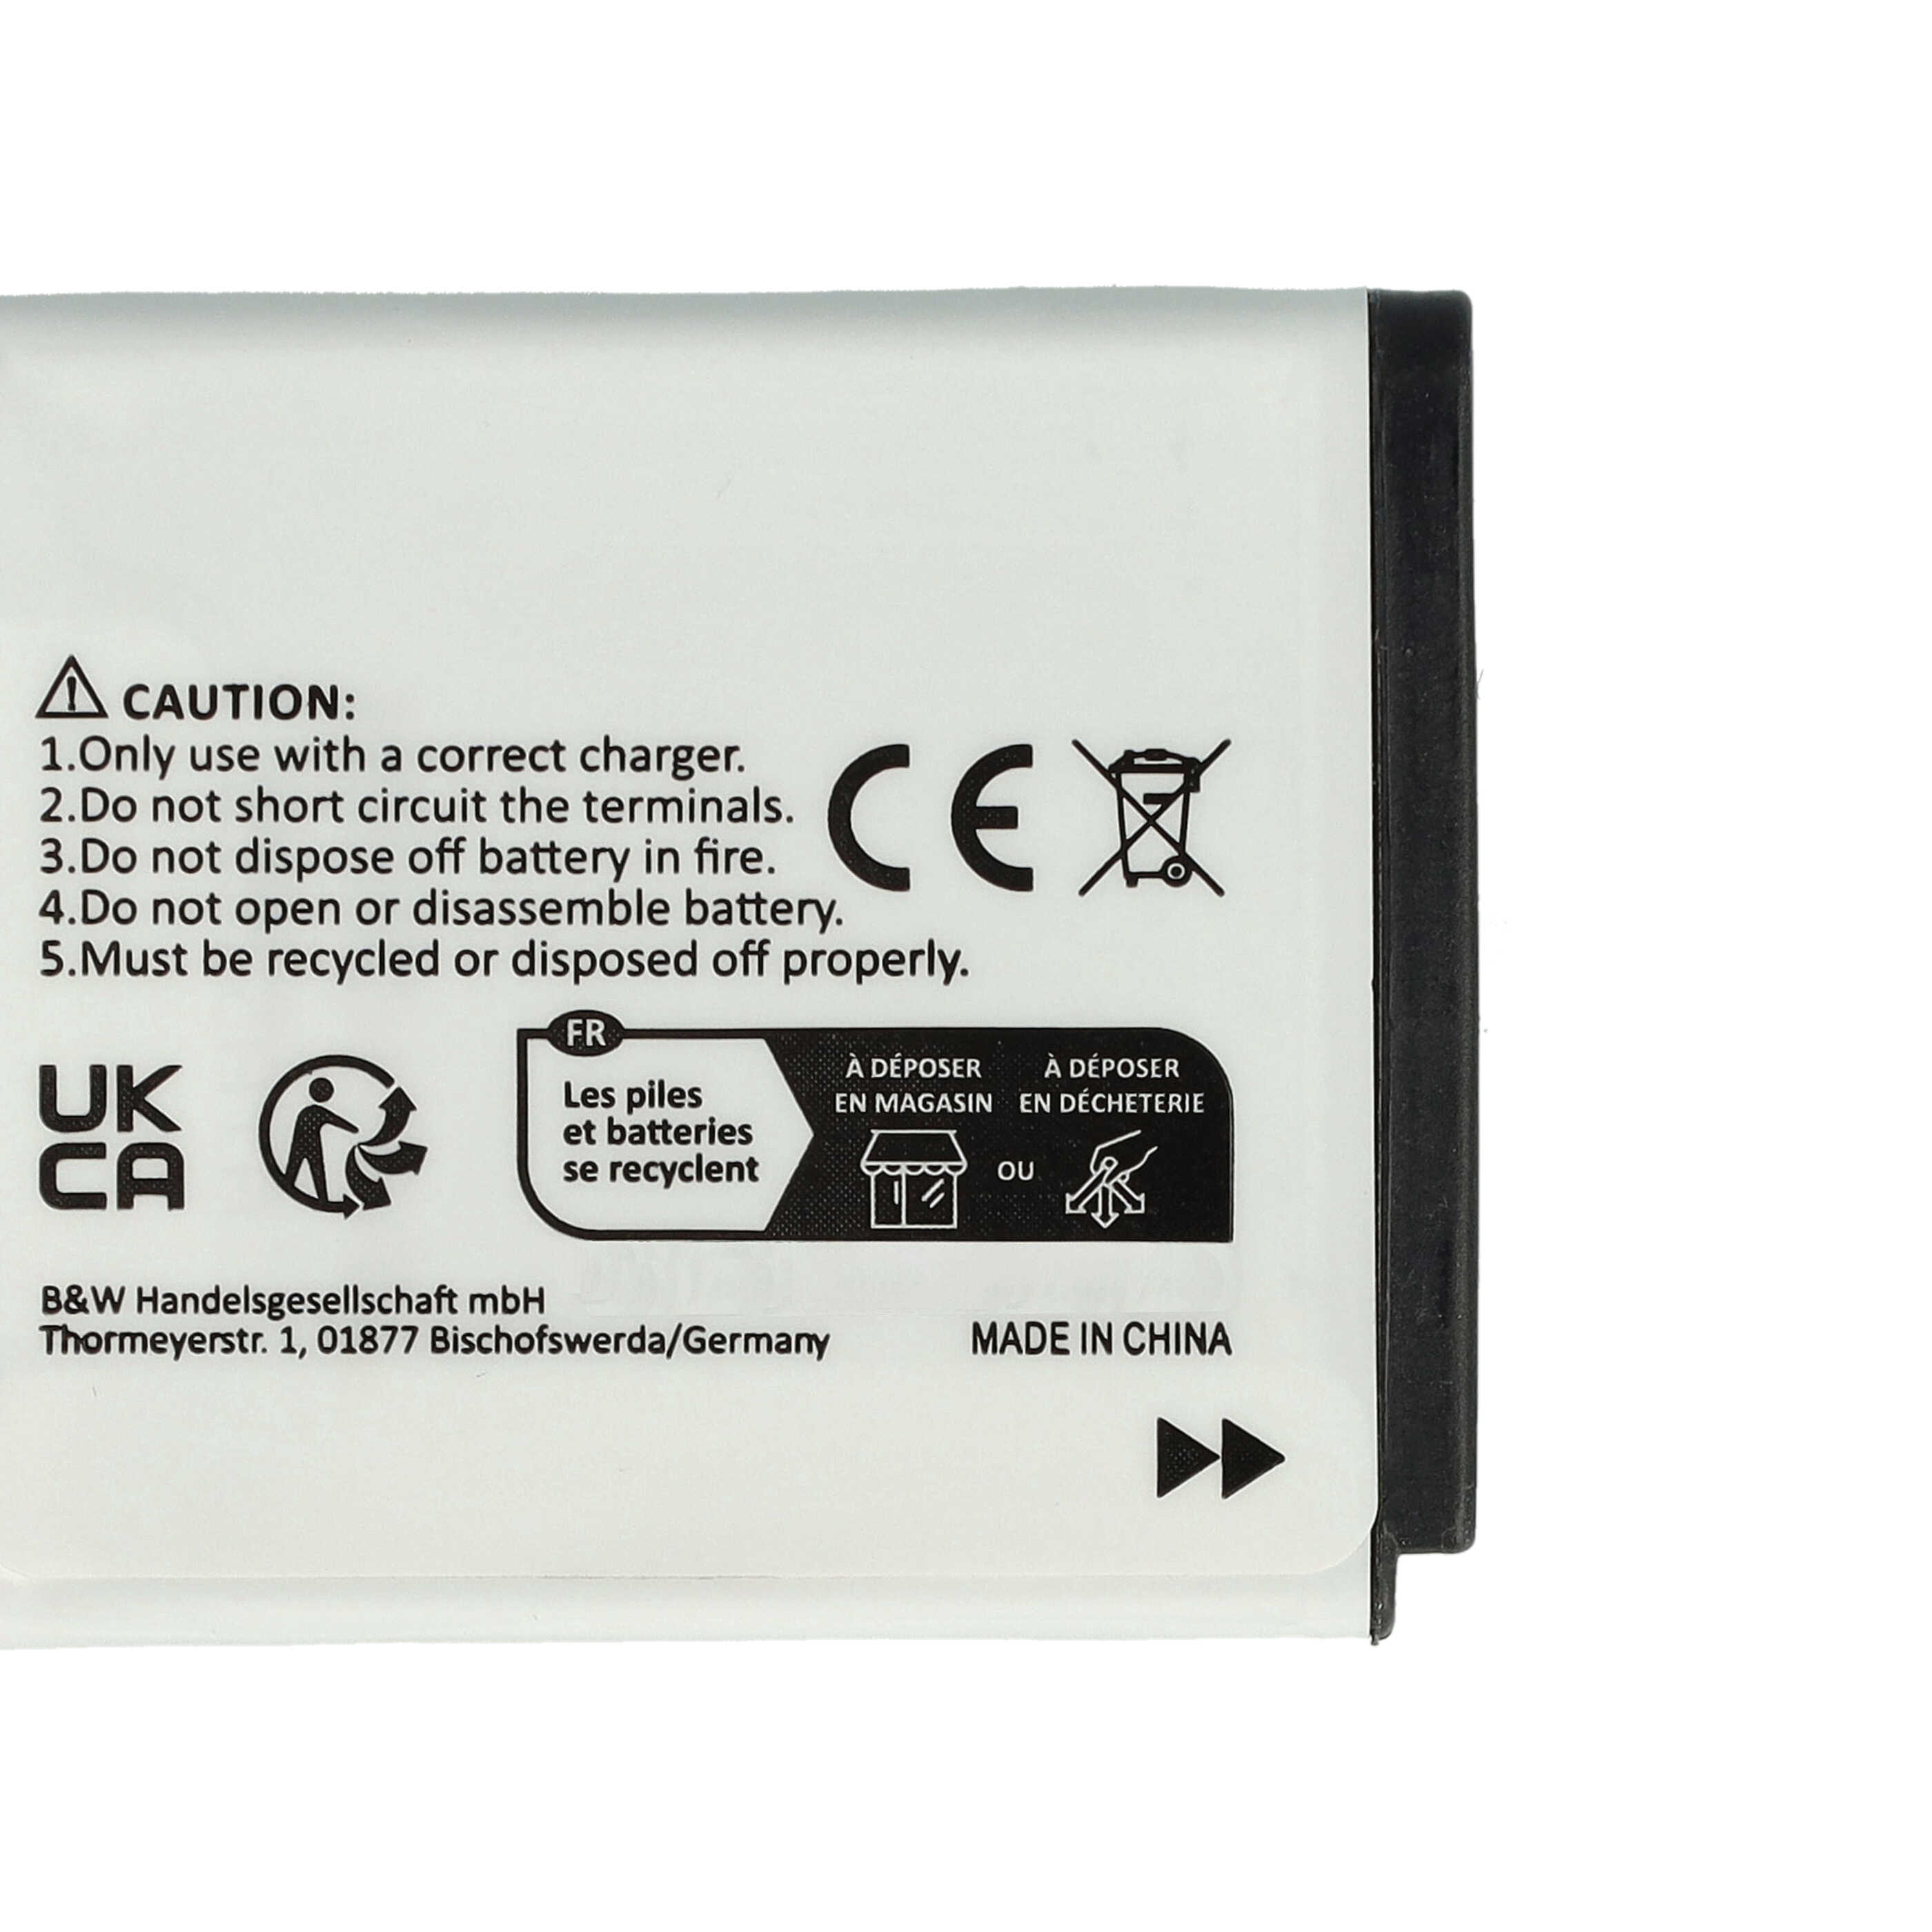 Batteria sostituisce Pentax D-Li68, D-Li122 per fotocamera Pentax - 650mAh 3,6V Li-Ion